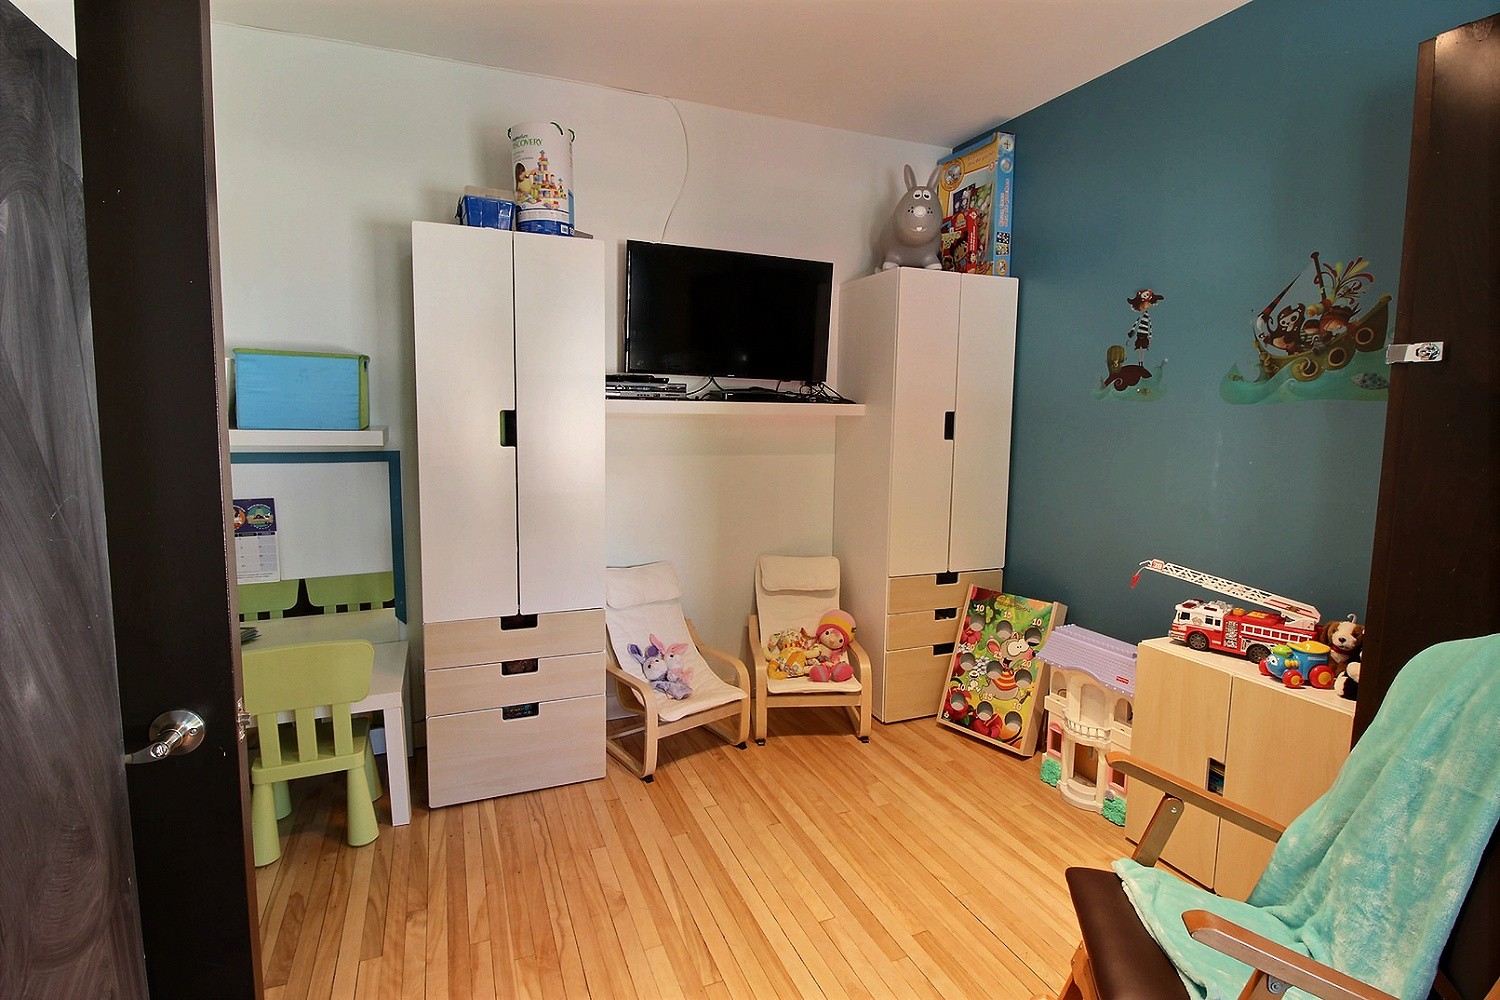 Photo d'une salle de jeux pour les enfants, munie de placards de rangement, d’un bureau et d’une chaise miniatures, de divers jouets, d’une télévision et d’une chaise à bascule.